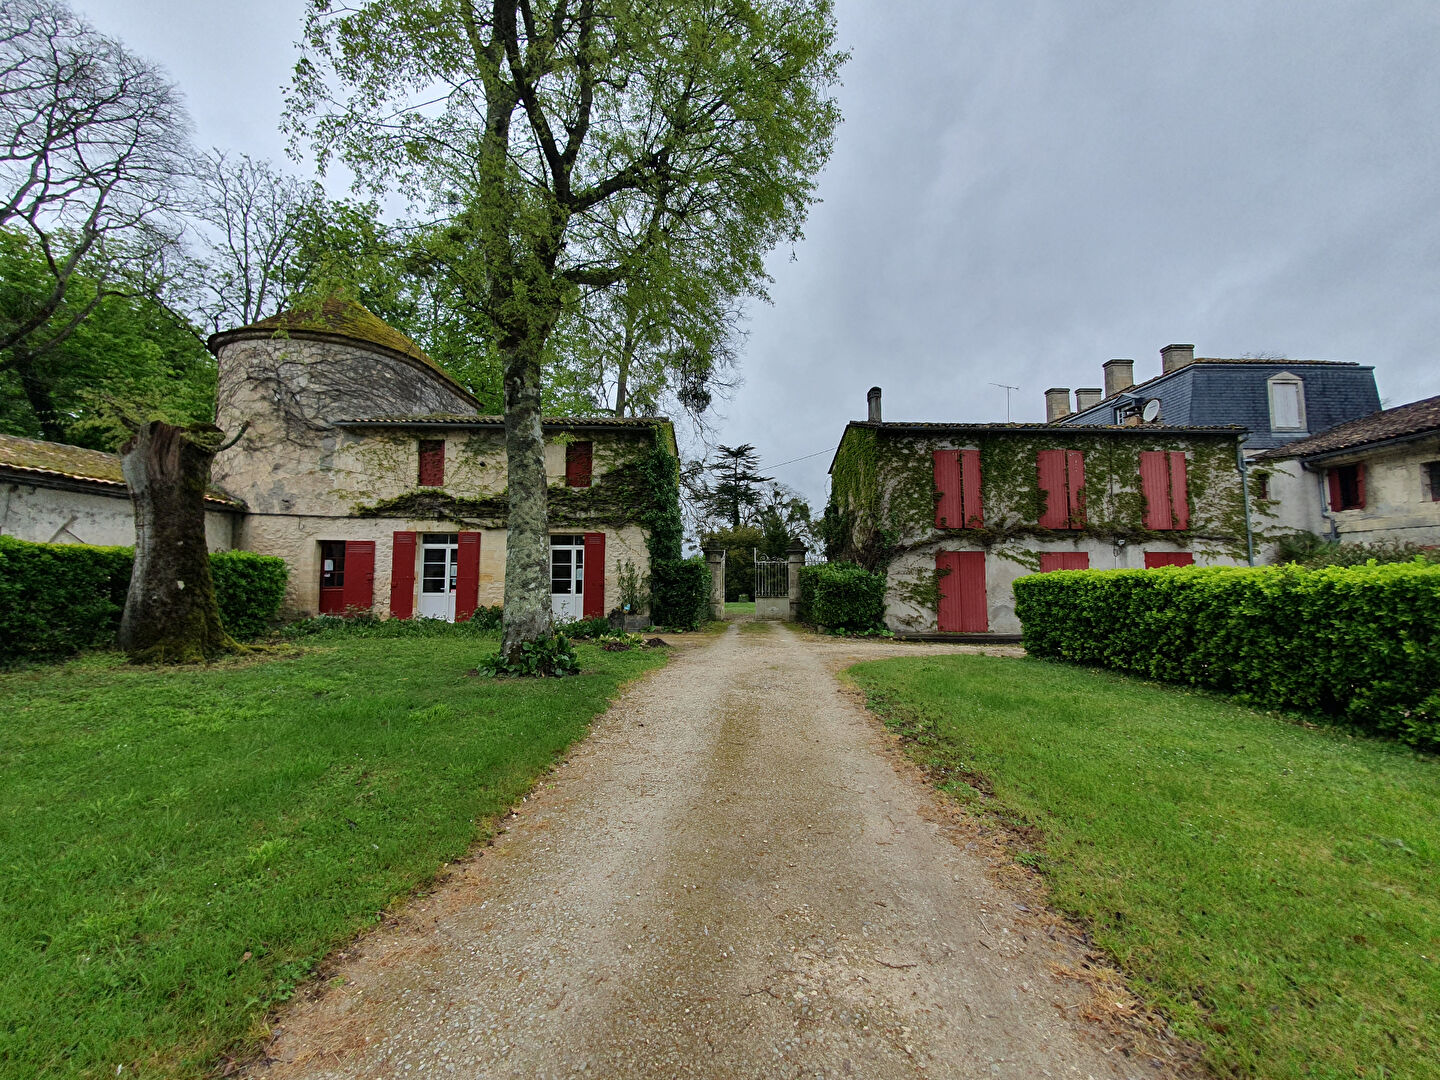 Investissement immobilier proche Bordeaux Métropole